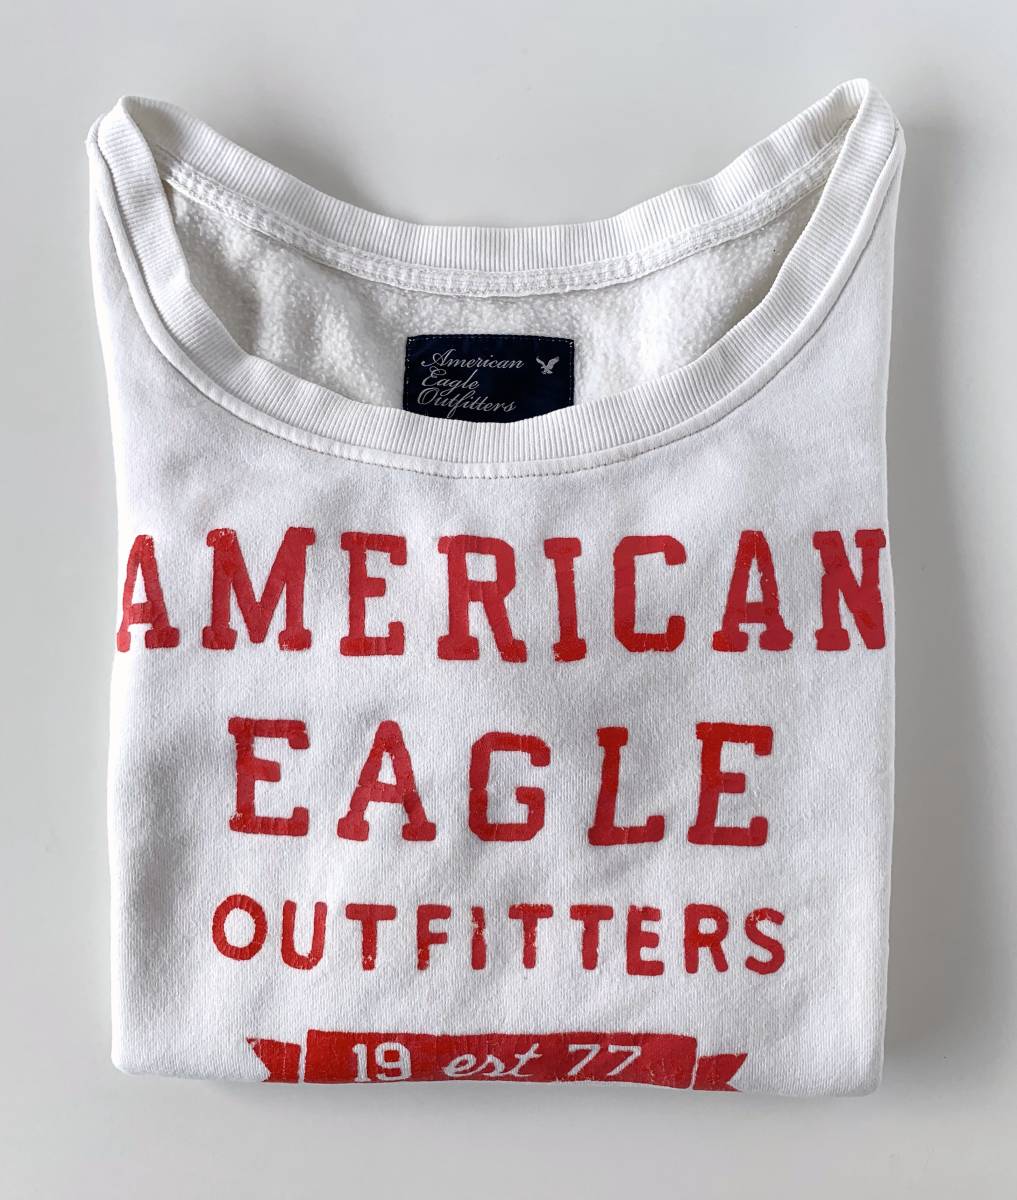 ★送料無料 美品 American Eagle Outfitters アメリカンイーグル トップス 長袖 トレーナーシャツ 白 サイズXS レディース  女性用